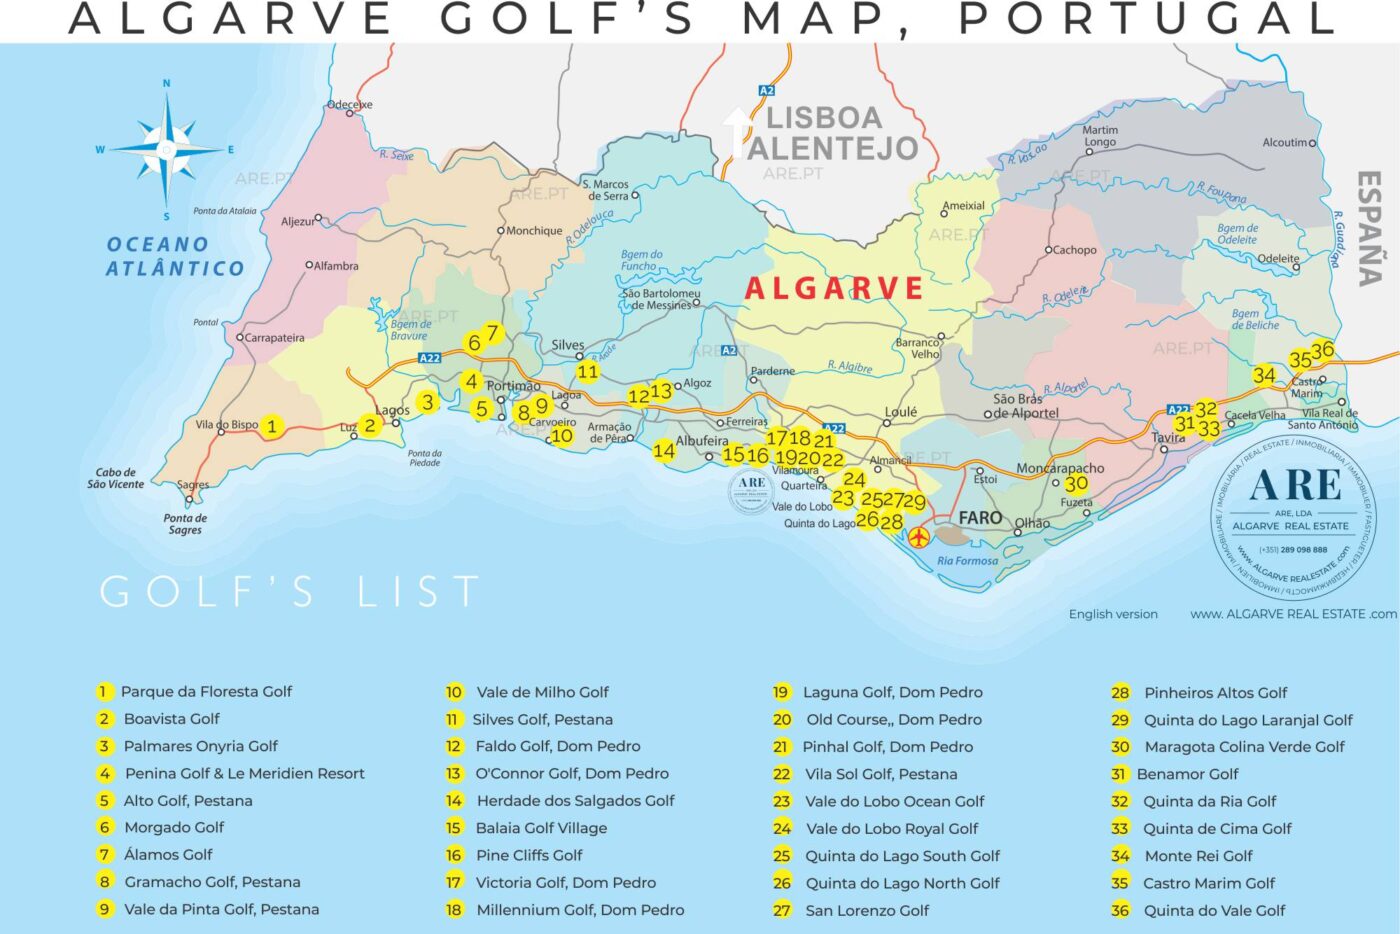 Mapa del Algarve que indica 36 campos de golf en los 16 municipios.